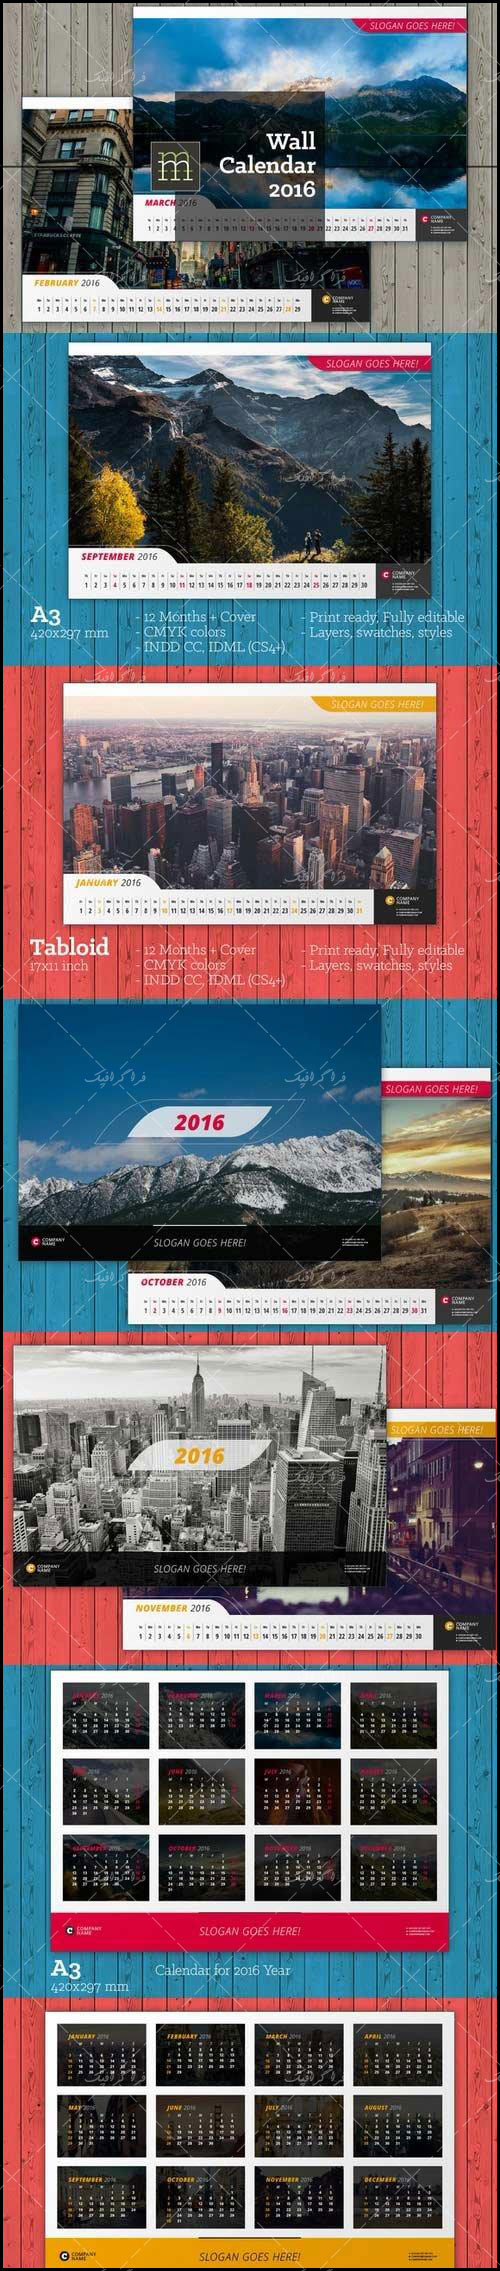 فایل لایه باز ایندیزاین تقویم دیواری سال 2016 - شماره 2